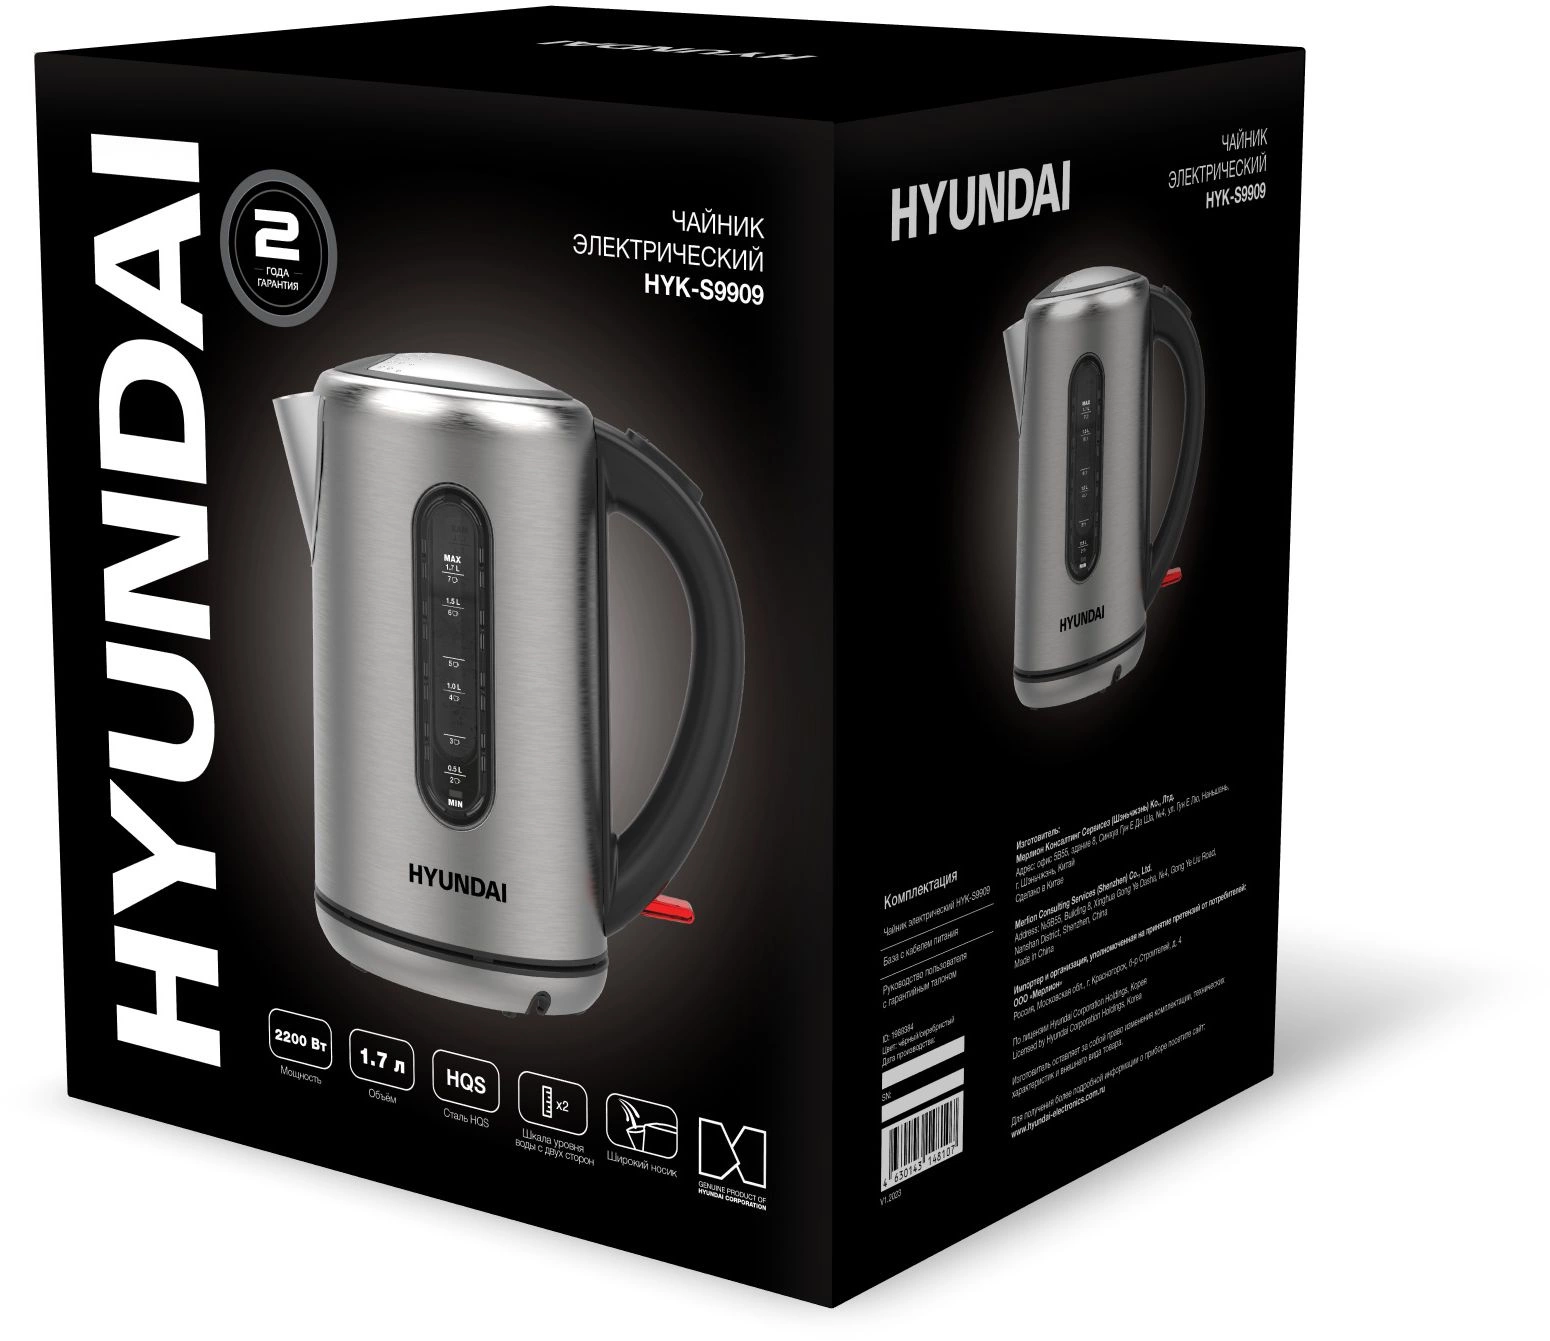 Чайник электрический Hyundai HYK-S9909 1.7л. 2200Вт серебристый матовый/черный корпус: металл